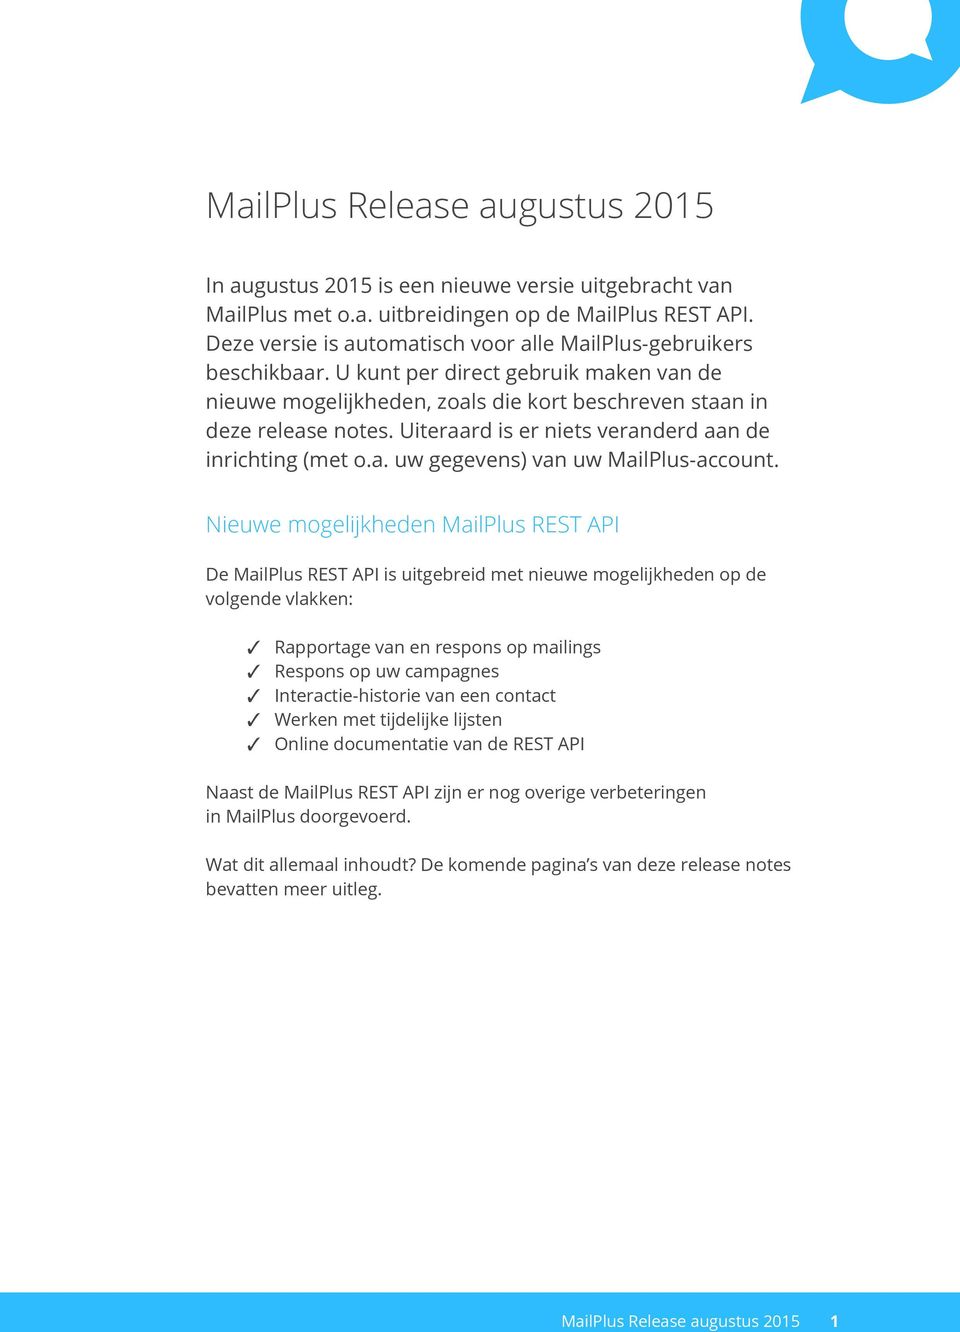 Nieuwe mogelijkheden MailPlus REST API De MailPlus REST API is uitgebreid met nieuwe mogelijkheden op de volgende vlakken: Rapportage van en respons op mailings Respons op uw campagnes